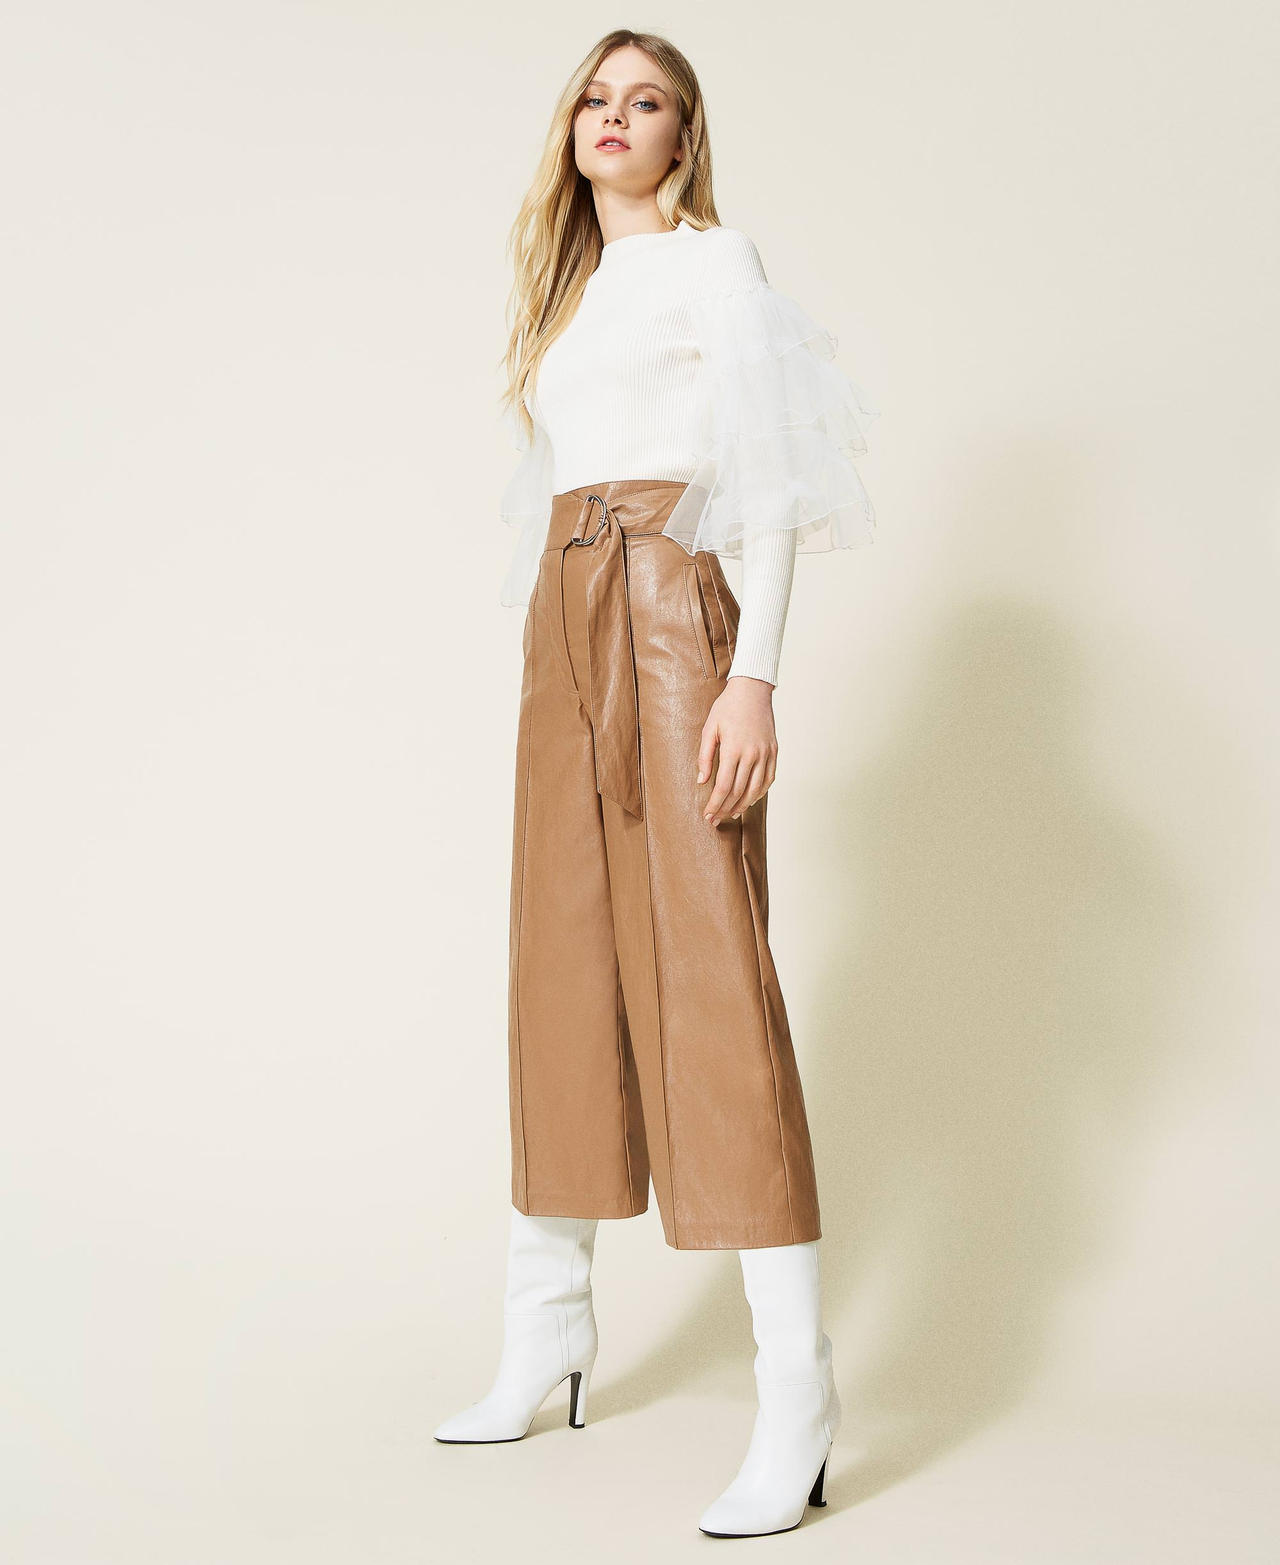 Pantalon ample effet cuir Beige « Light Wood » Femme 222TT2015-02